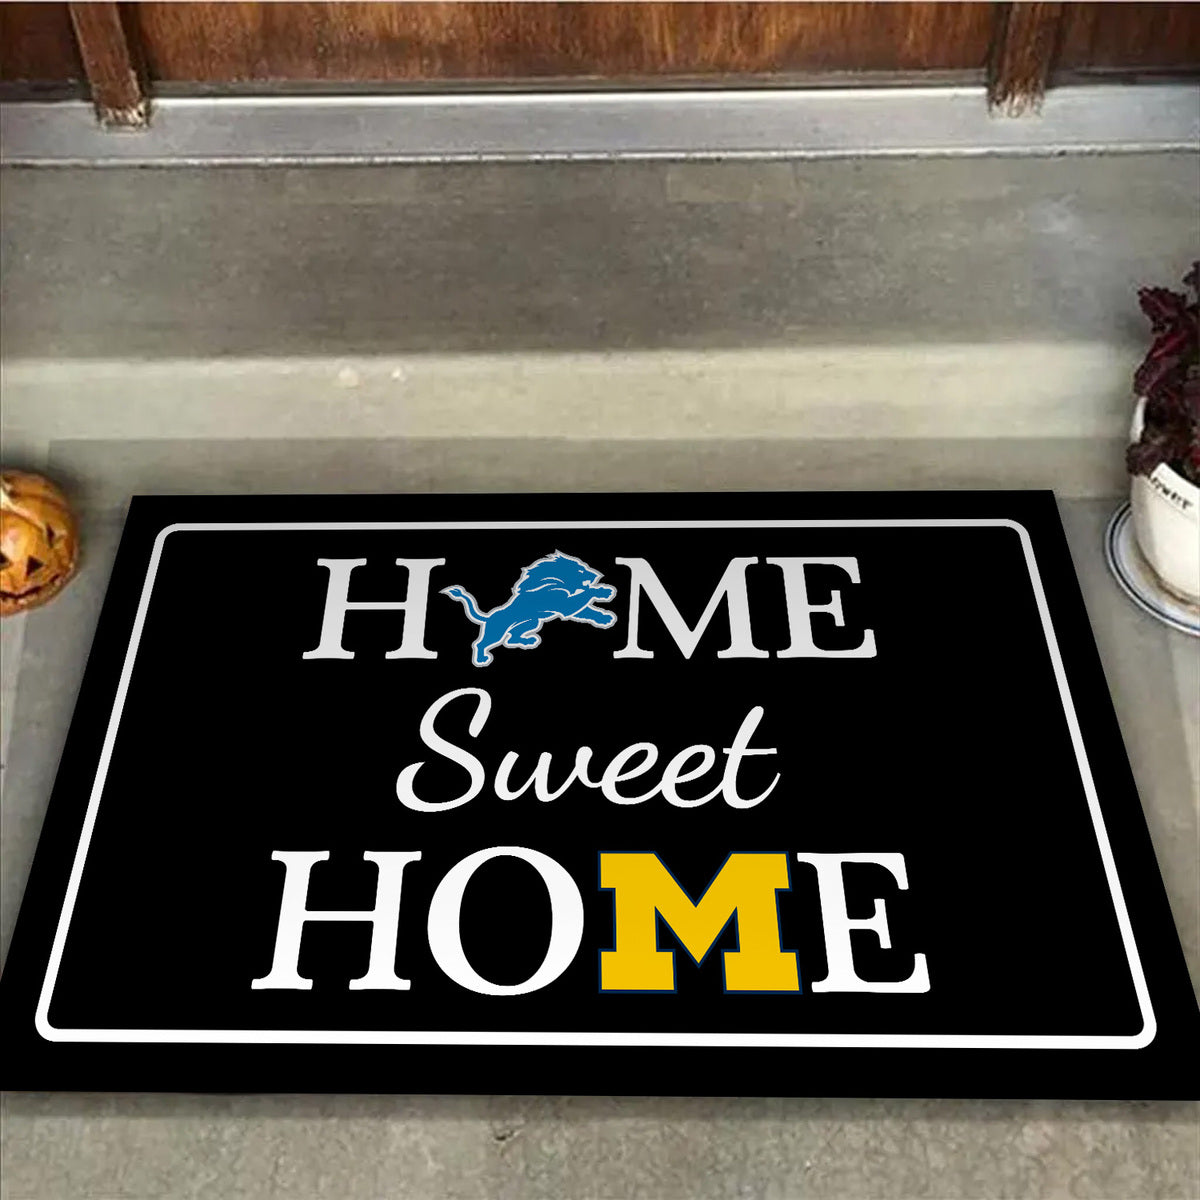 Home Sweet Home - Customized Doormat For Kyle Maurice - Anti Slip Indoor Doormat